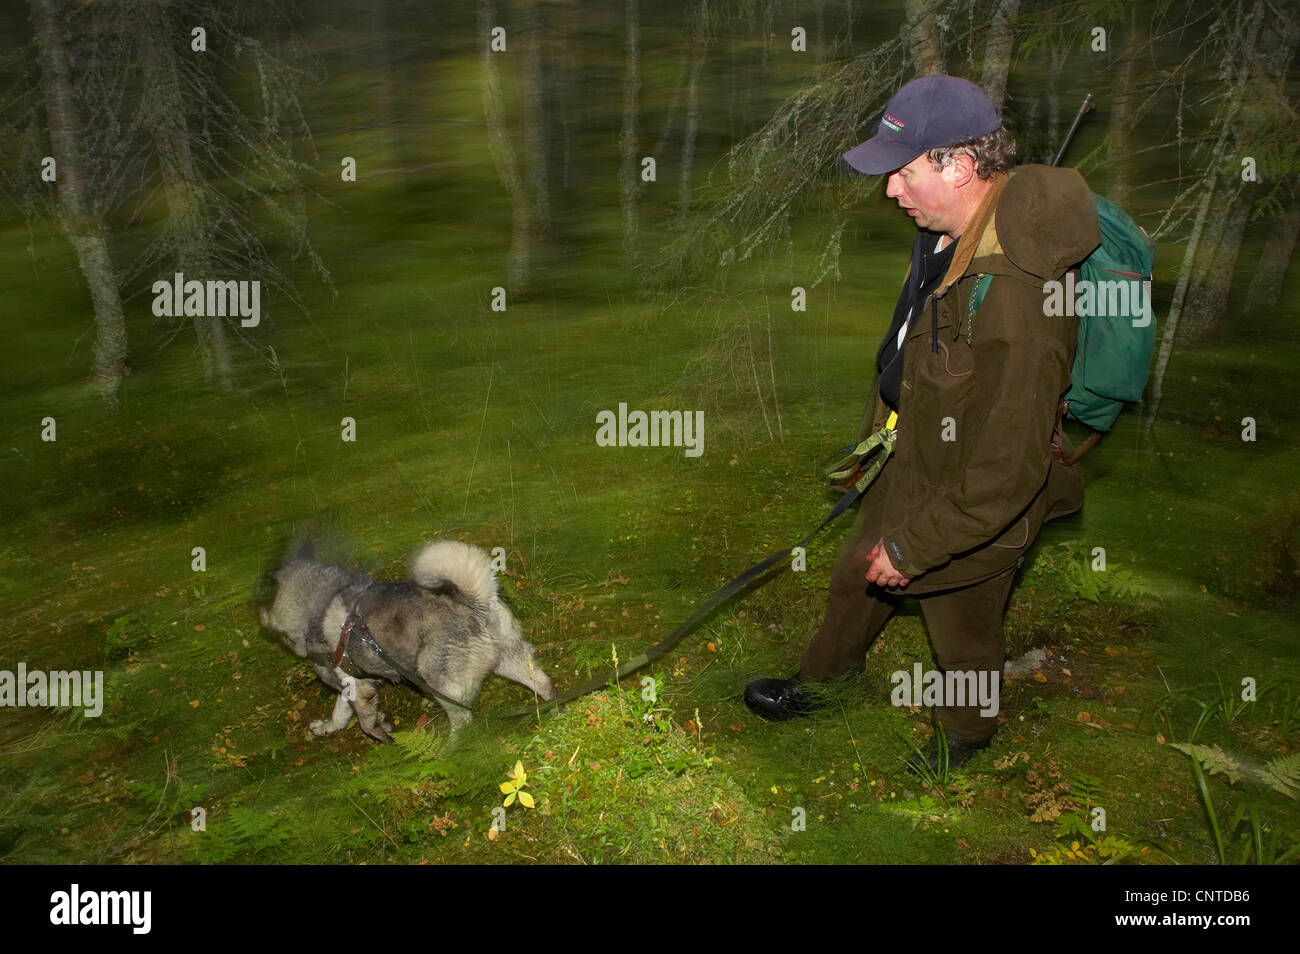 Le wapiti, l'orignal (Alces alces alces), hunter avec un chien marche à travers une forêt pendant la chasse au wapiti annuel en septembre, la Norvège, Nord-Trondelag, Flatanger Banque D'Images